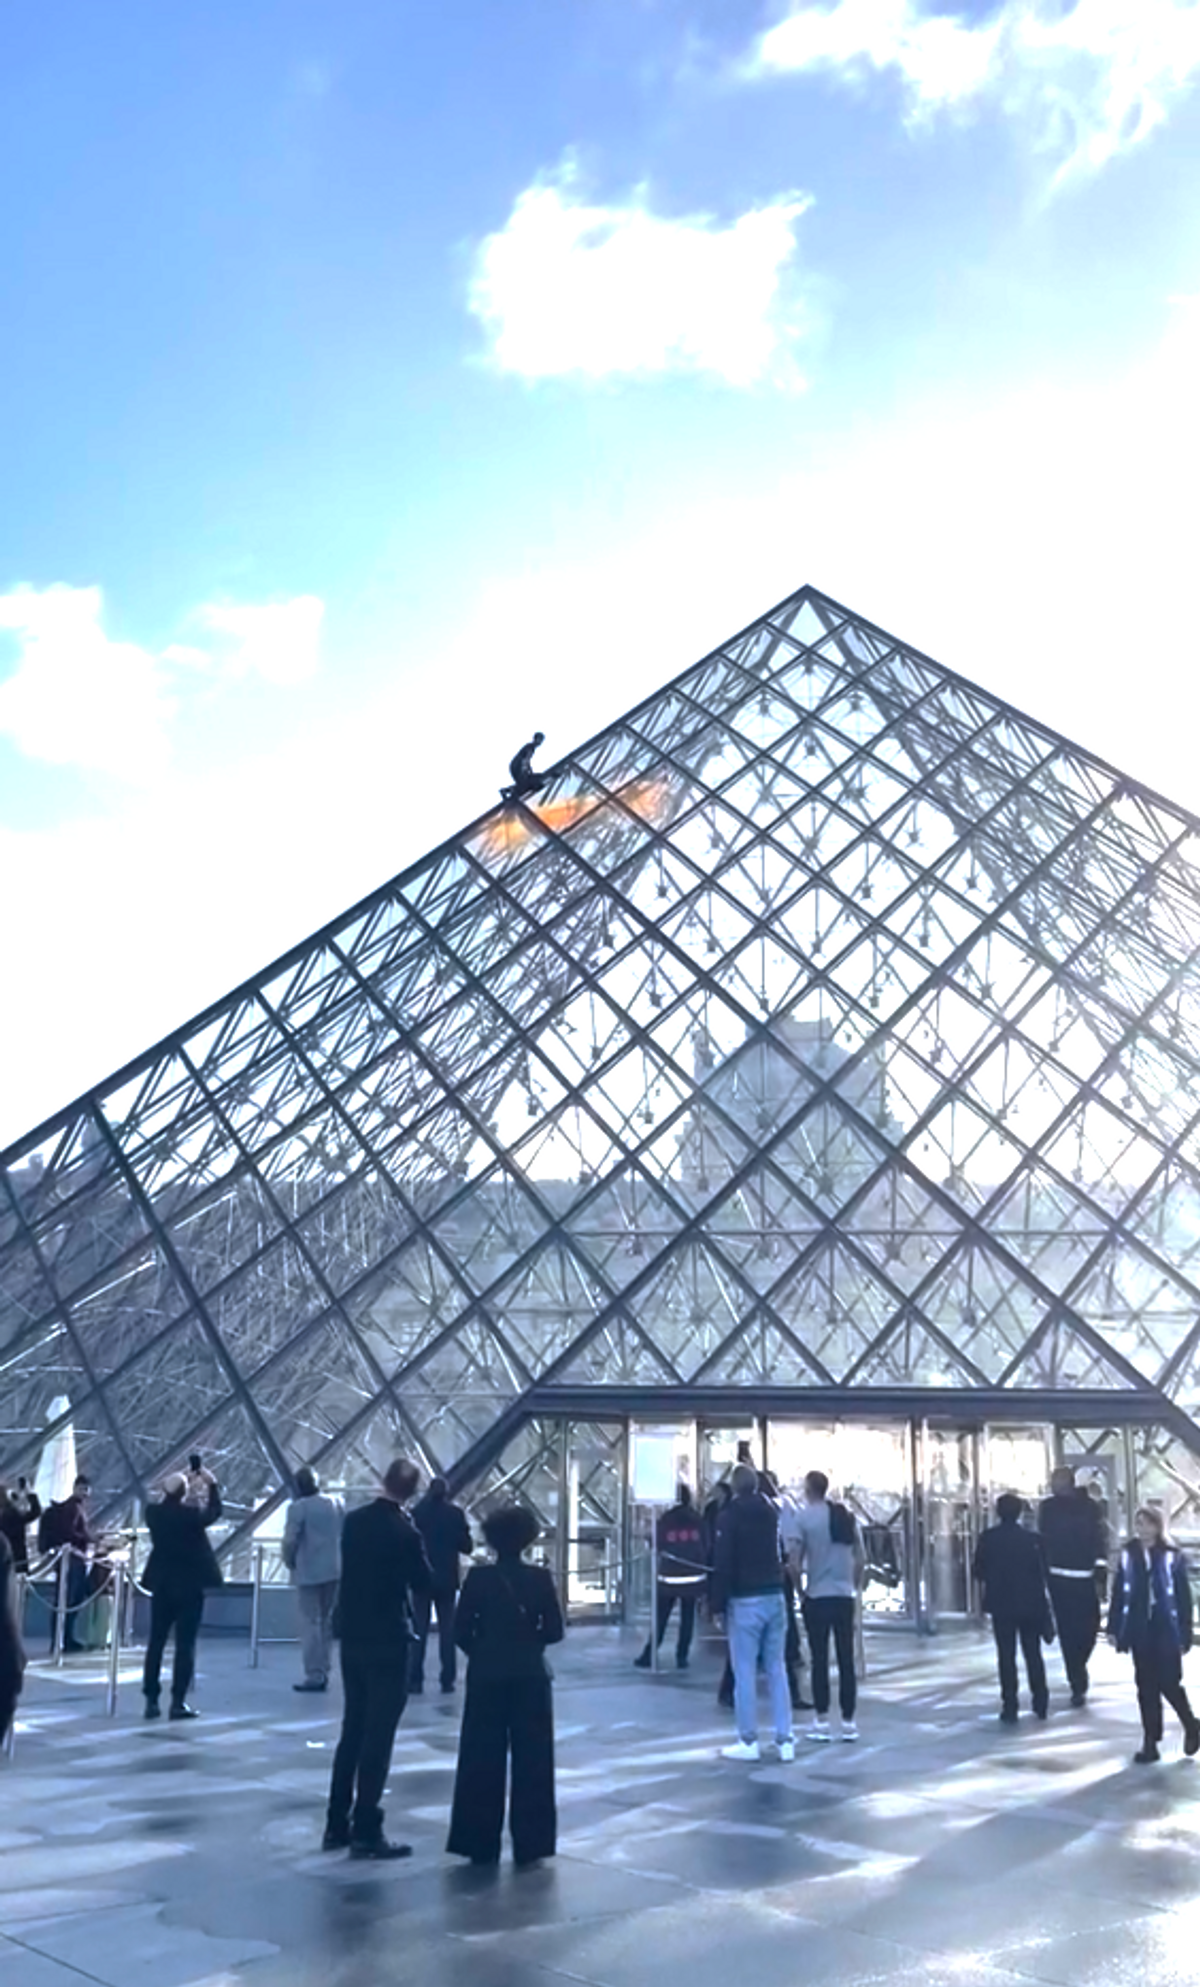 A climate activist from the protest group Dernière Rénovation scaled the monument using climbing equipment, a Musée du Louvre spokesperson says

Courtesy Dernière Rénovation 